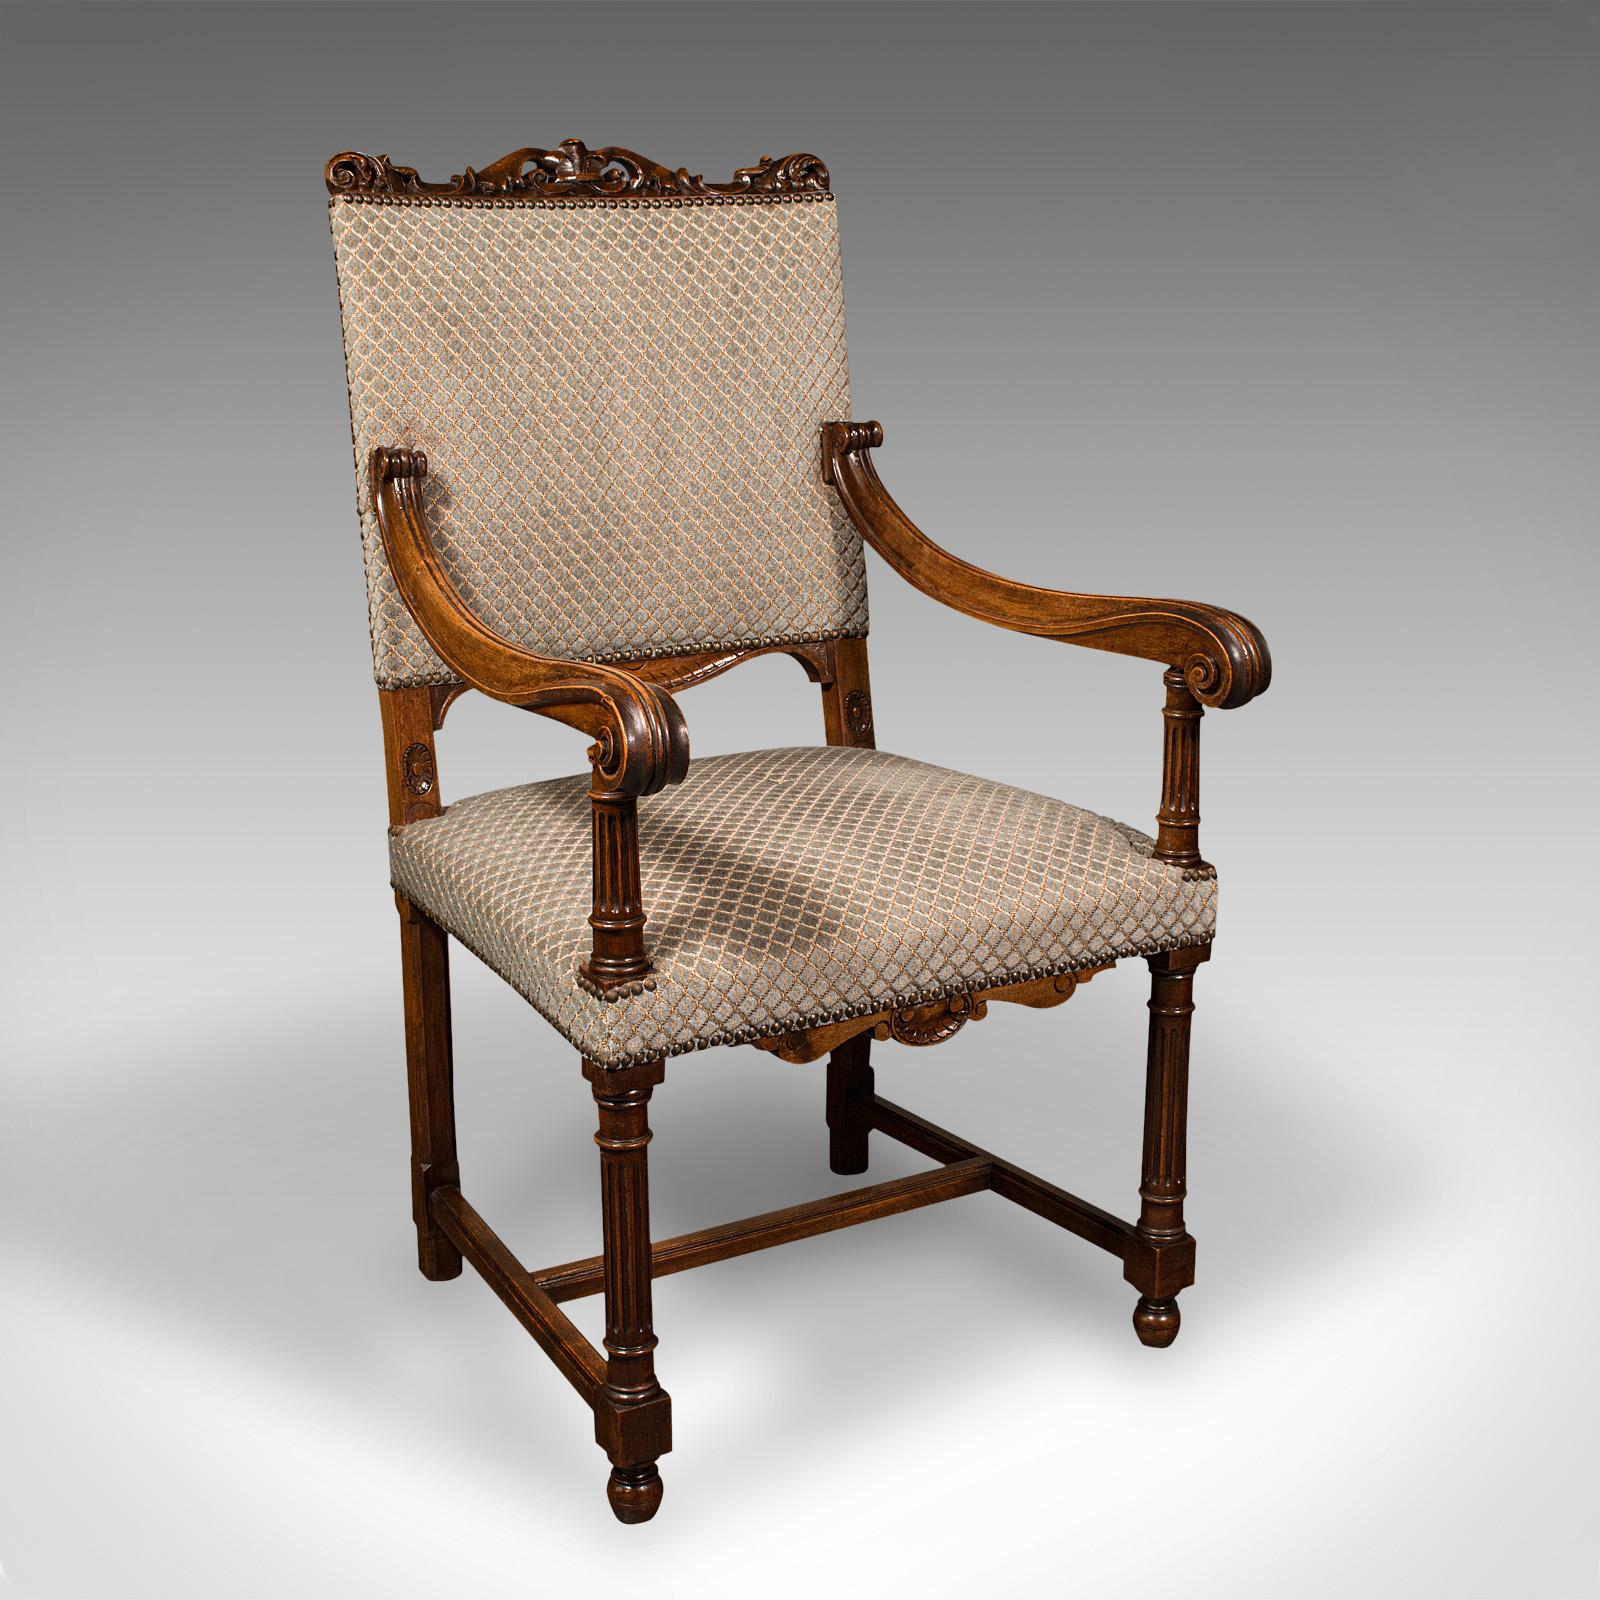 Dies ist ein Satz von 8 antiken Esszimmerstühlen. Englischer Nussbaum-Sitz mit gepolsterten Kissen aus der Edwardianischen Zeit, um 1910.

Mit reizvollen Nussbaumschäften und ansprechender Form geschmückt
Mit wünschenswerter Alterspatina und in